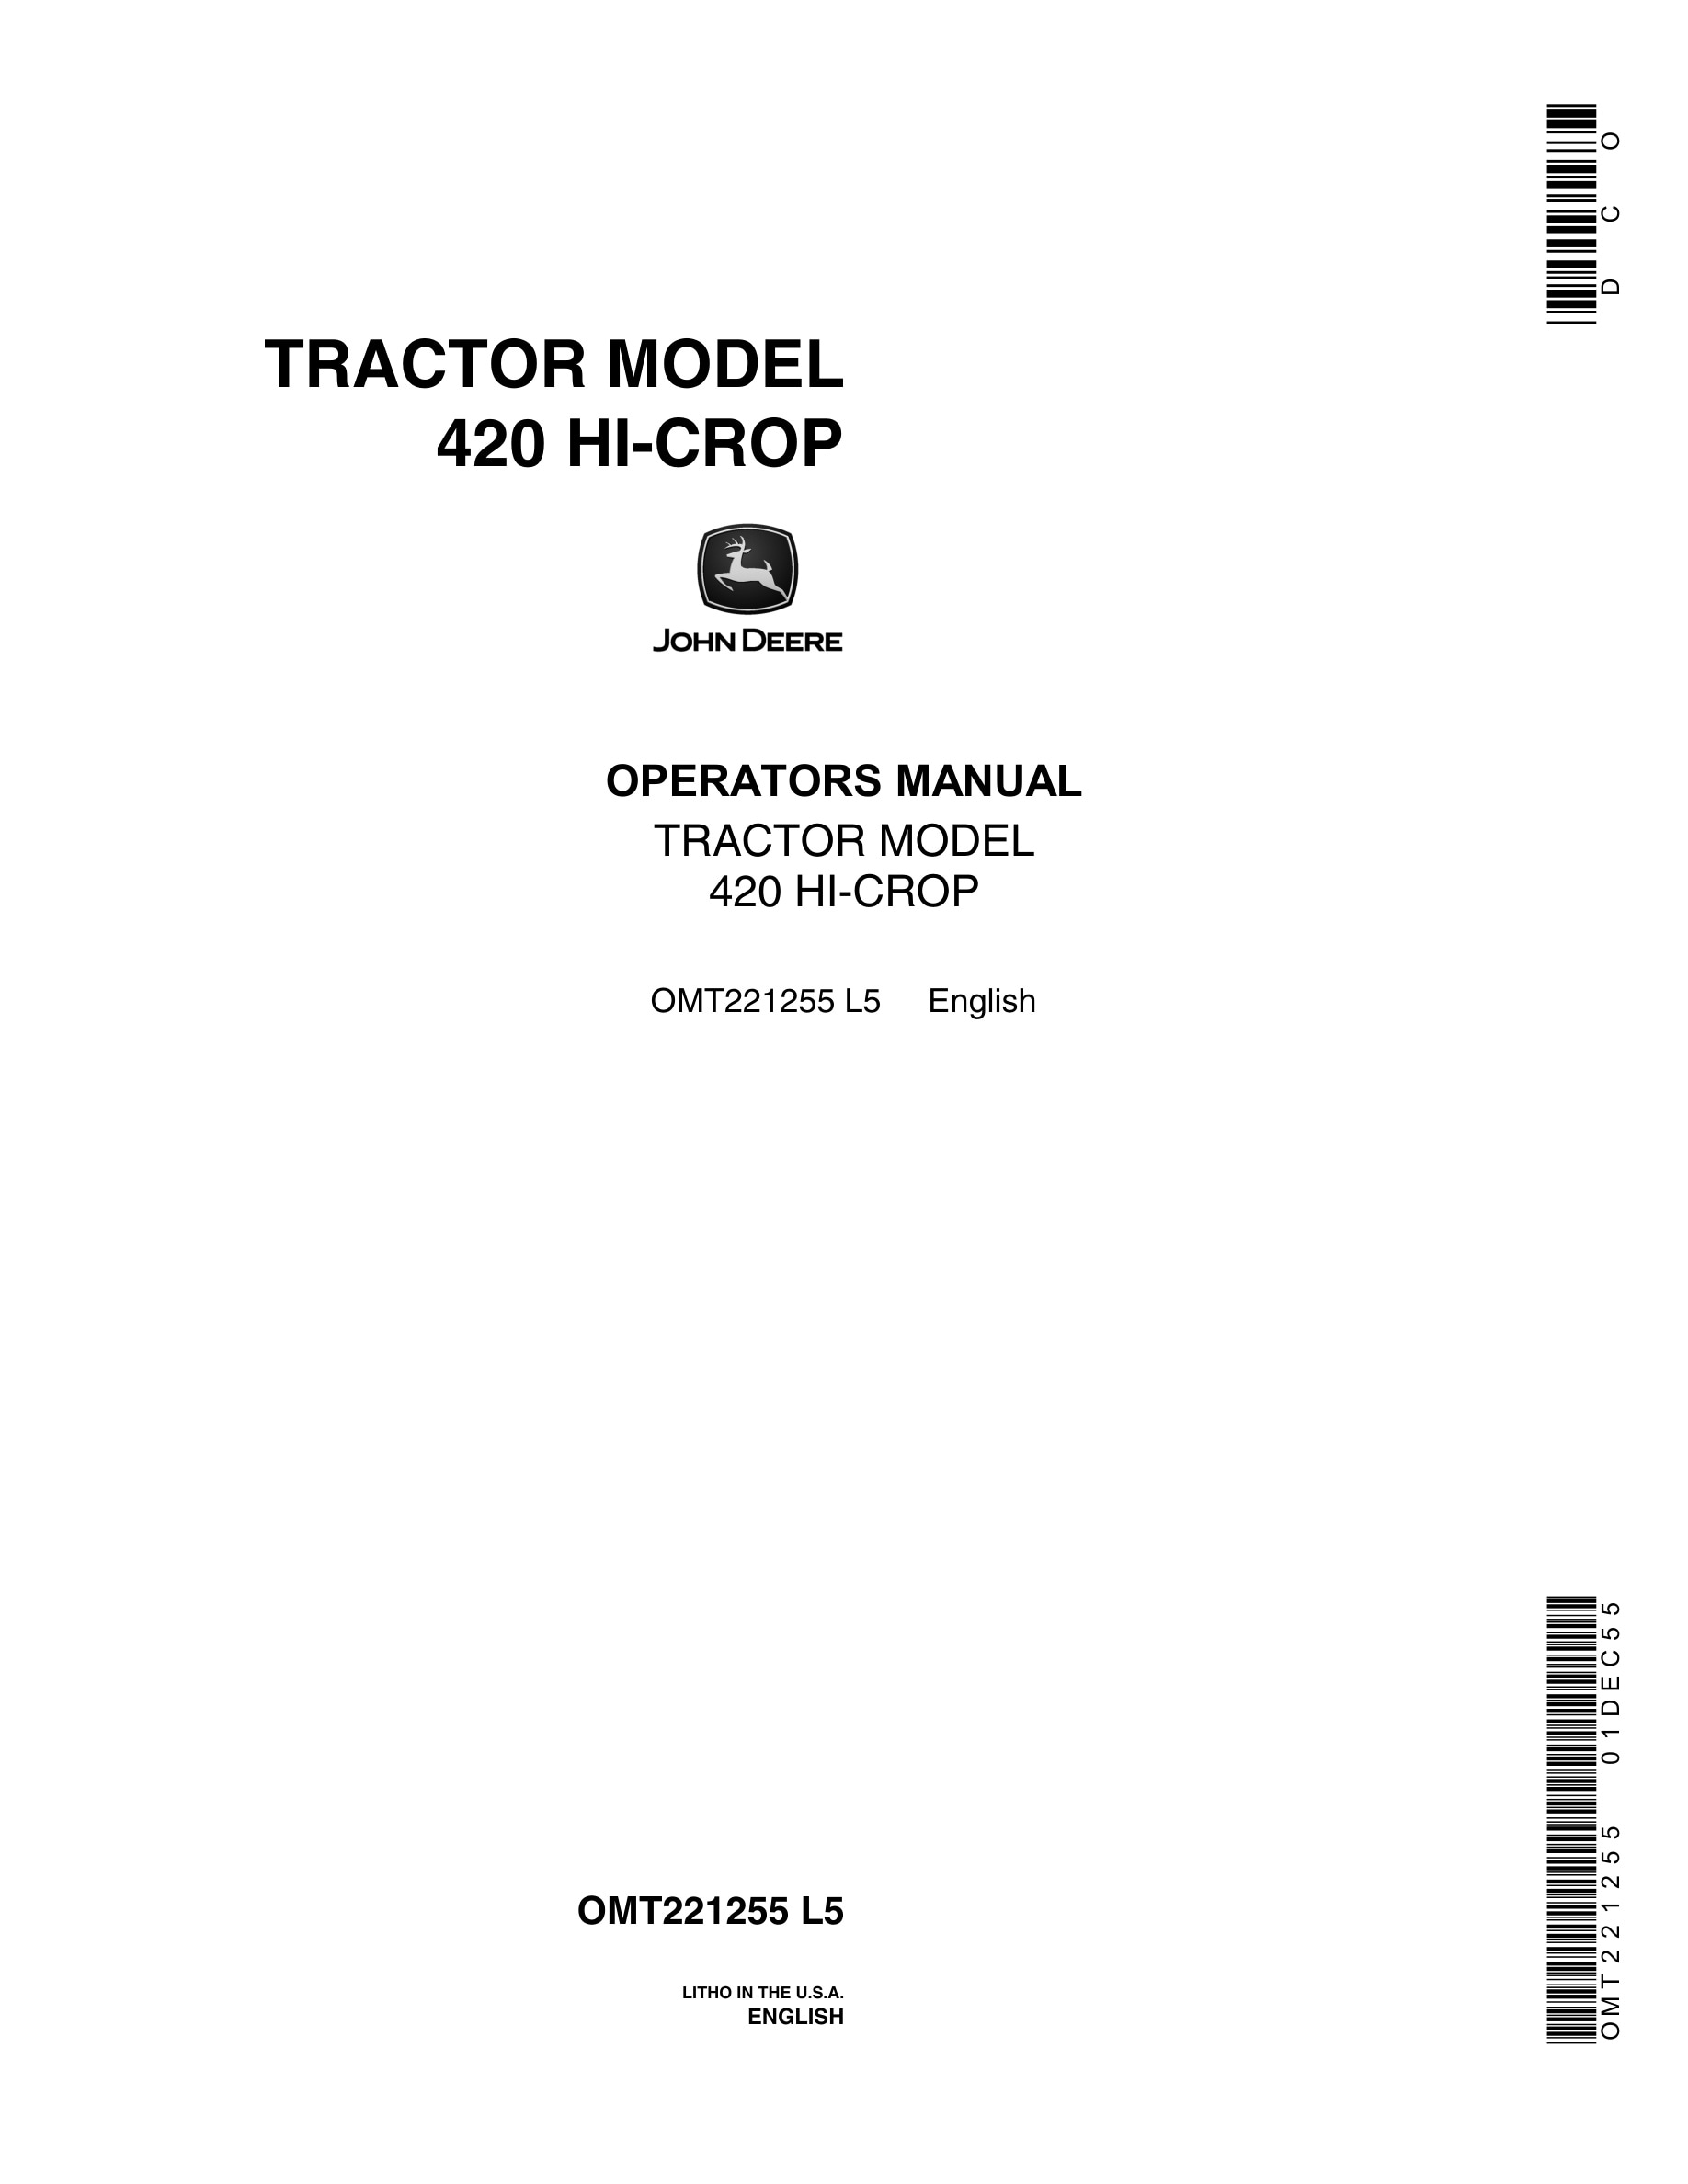 John Deere 420 Hi-crop Tractors Operator Manuals OMT221255-1